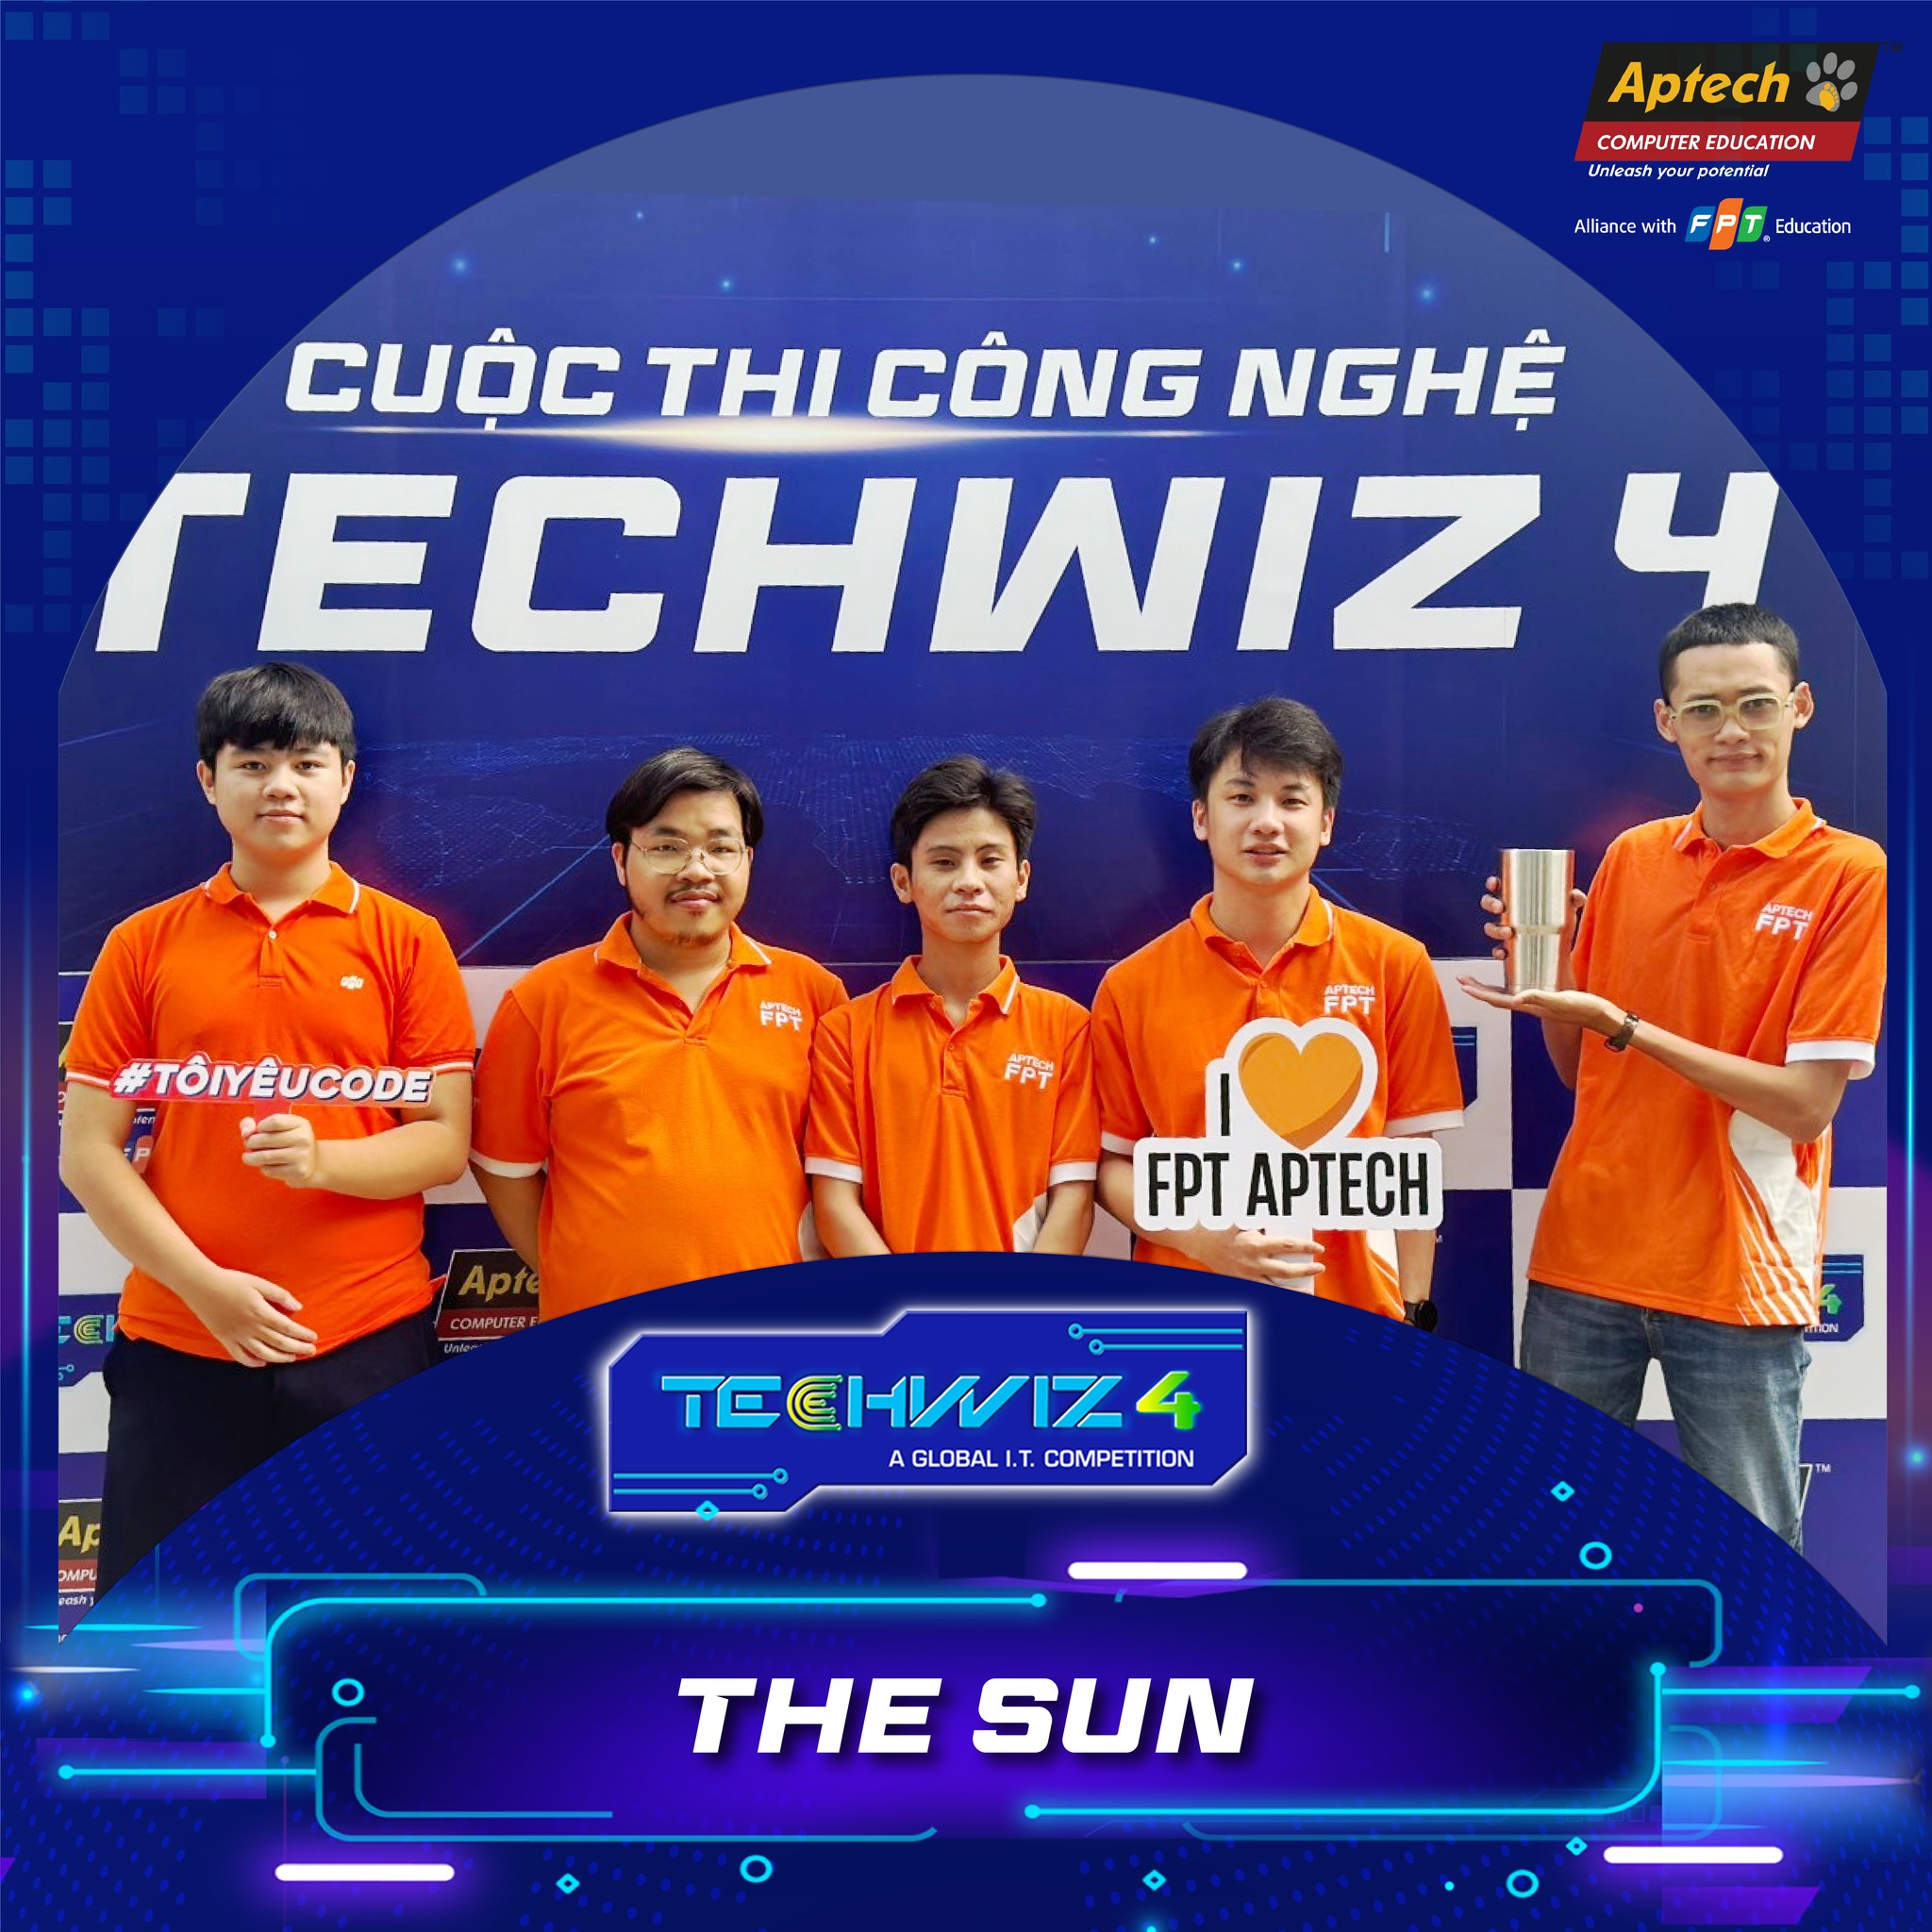 Team The Sun